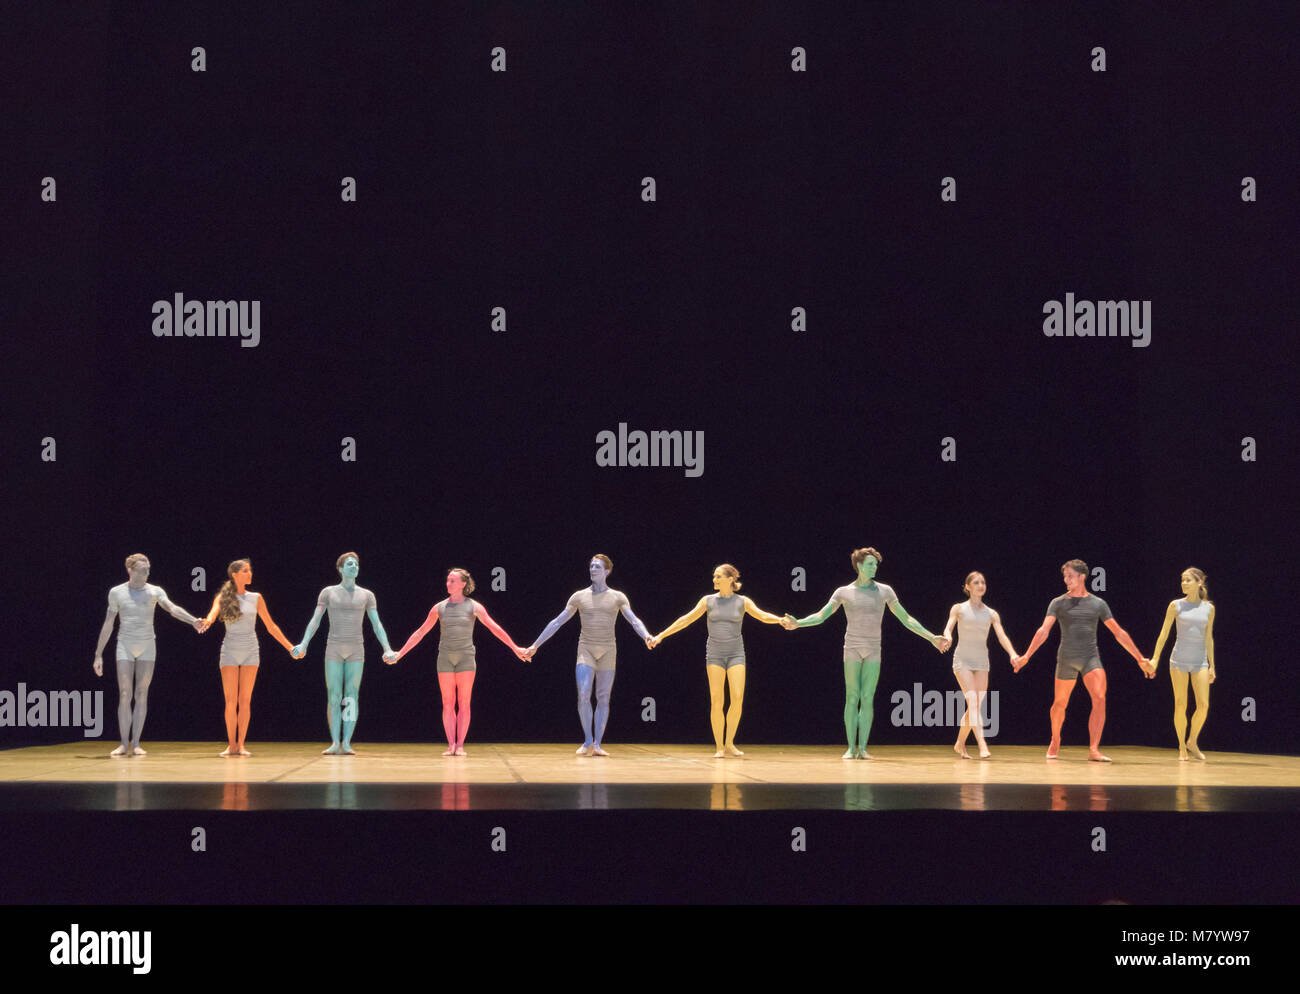 Vorhang auf für das Ballett des Grand miroir. Choreographie von Saburo Teshigawara, Musik von ESA-Pekka Salonen, Opernhaus Garnier, Paris, Frankreich Stockfoto